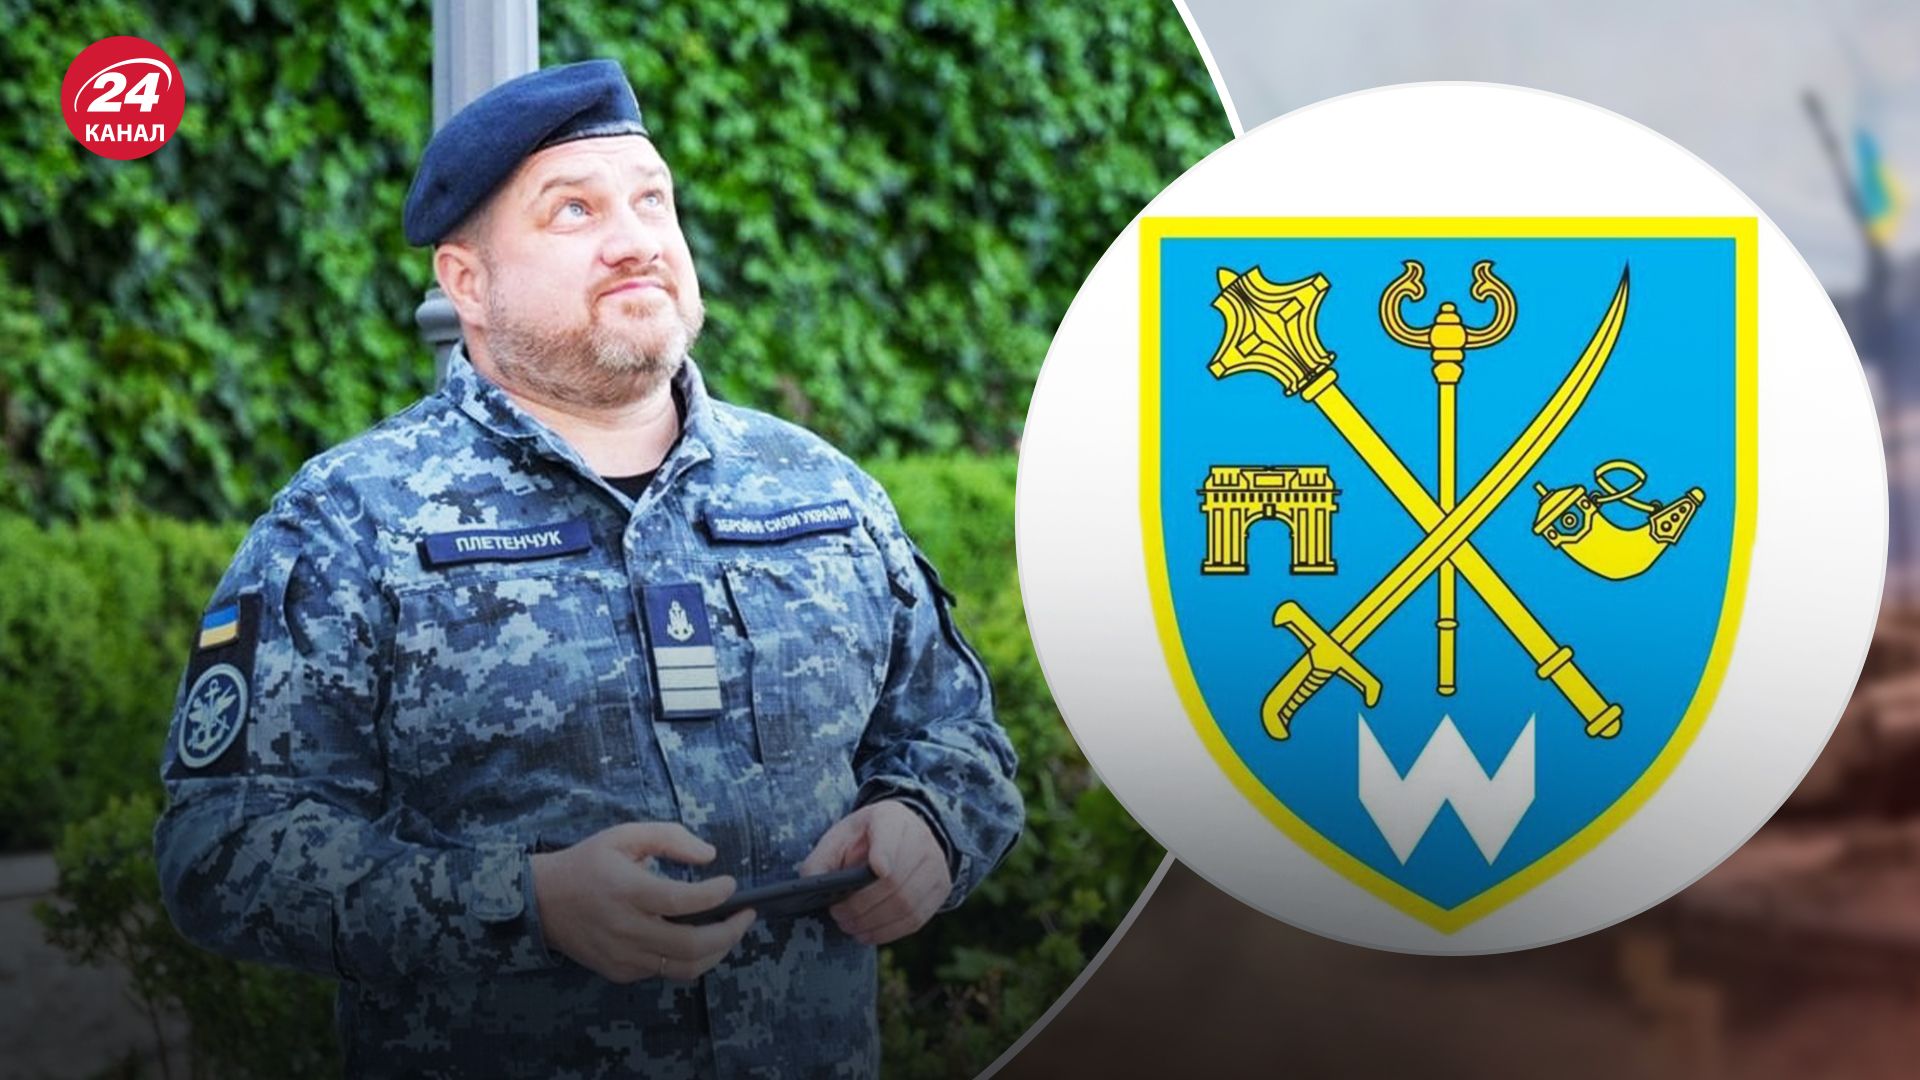 Плетенчук уходит с должности спикера Сил обороны Юга Украины